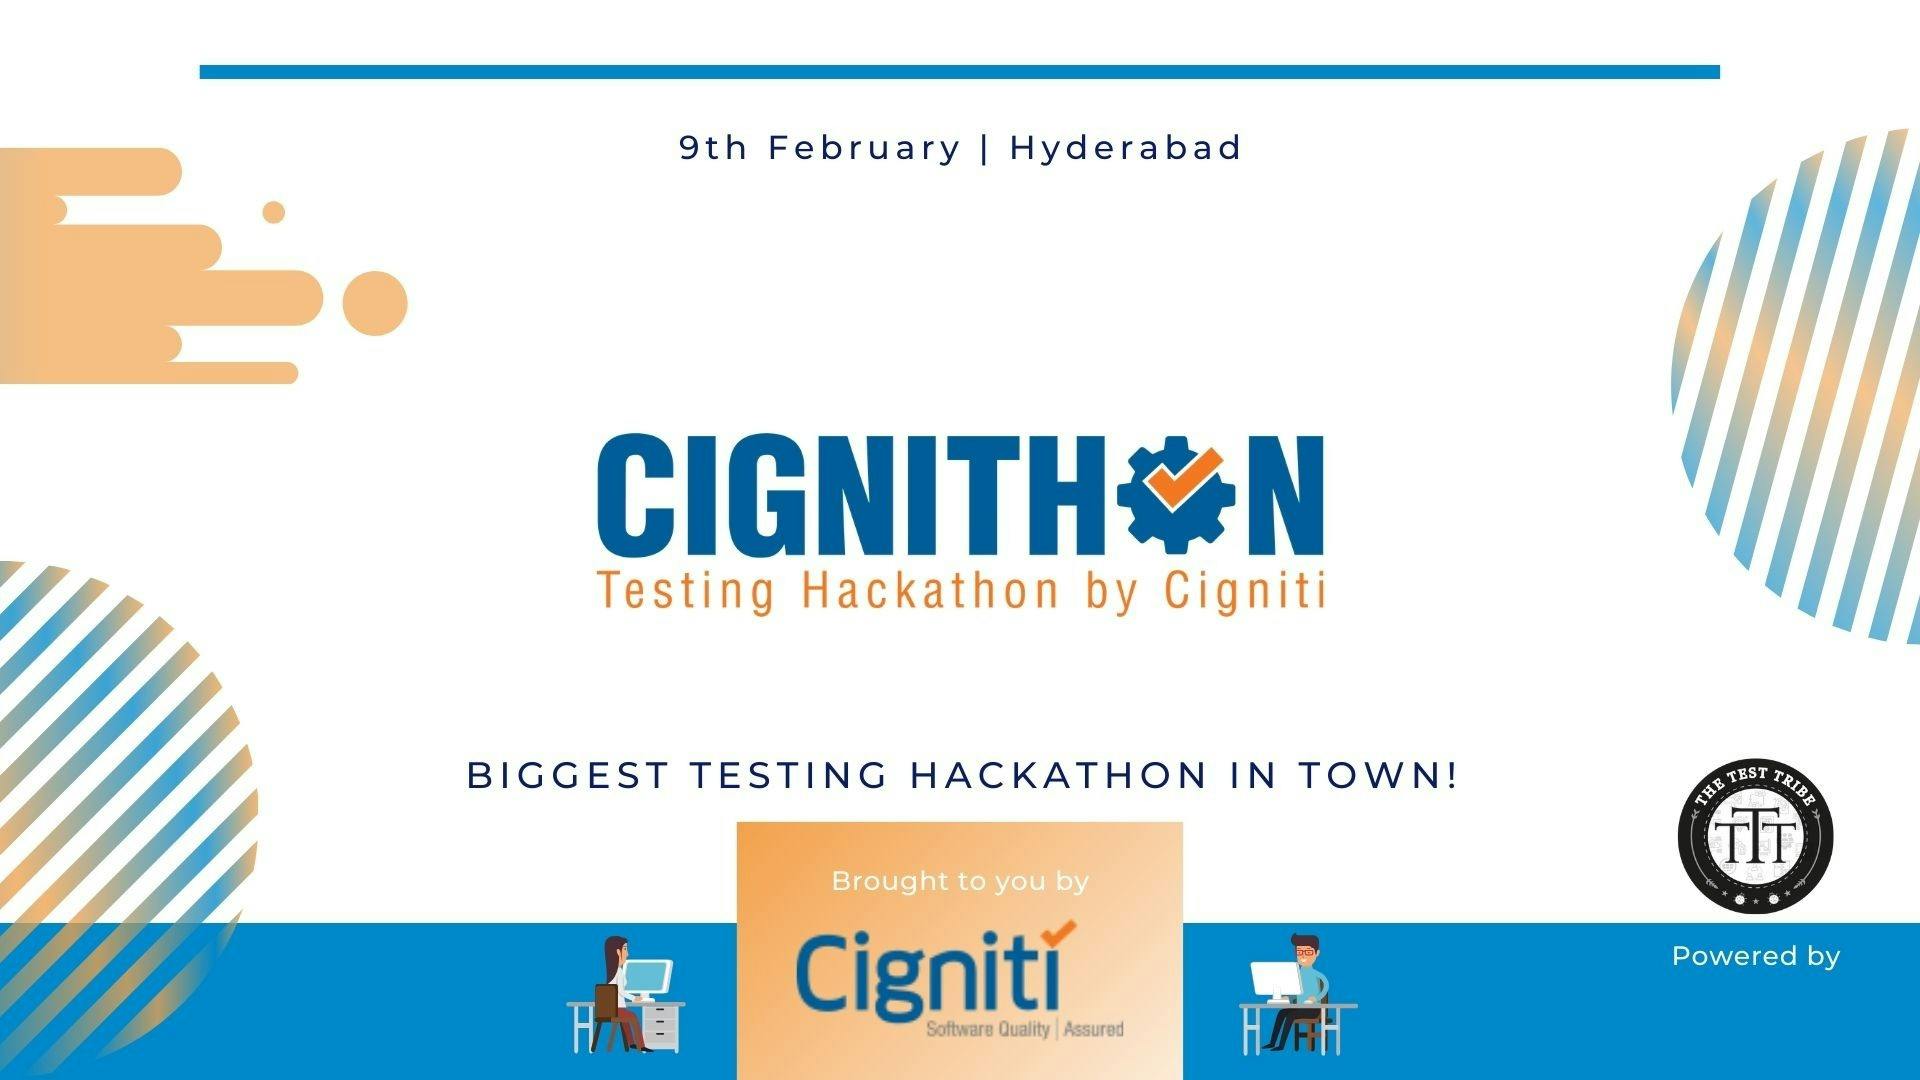 Cignithon- A Cigniti Testing Hackathon